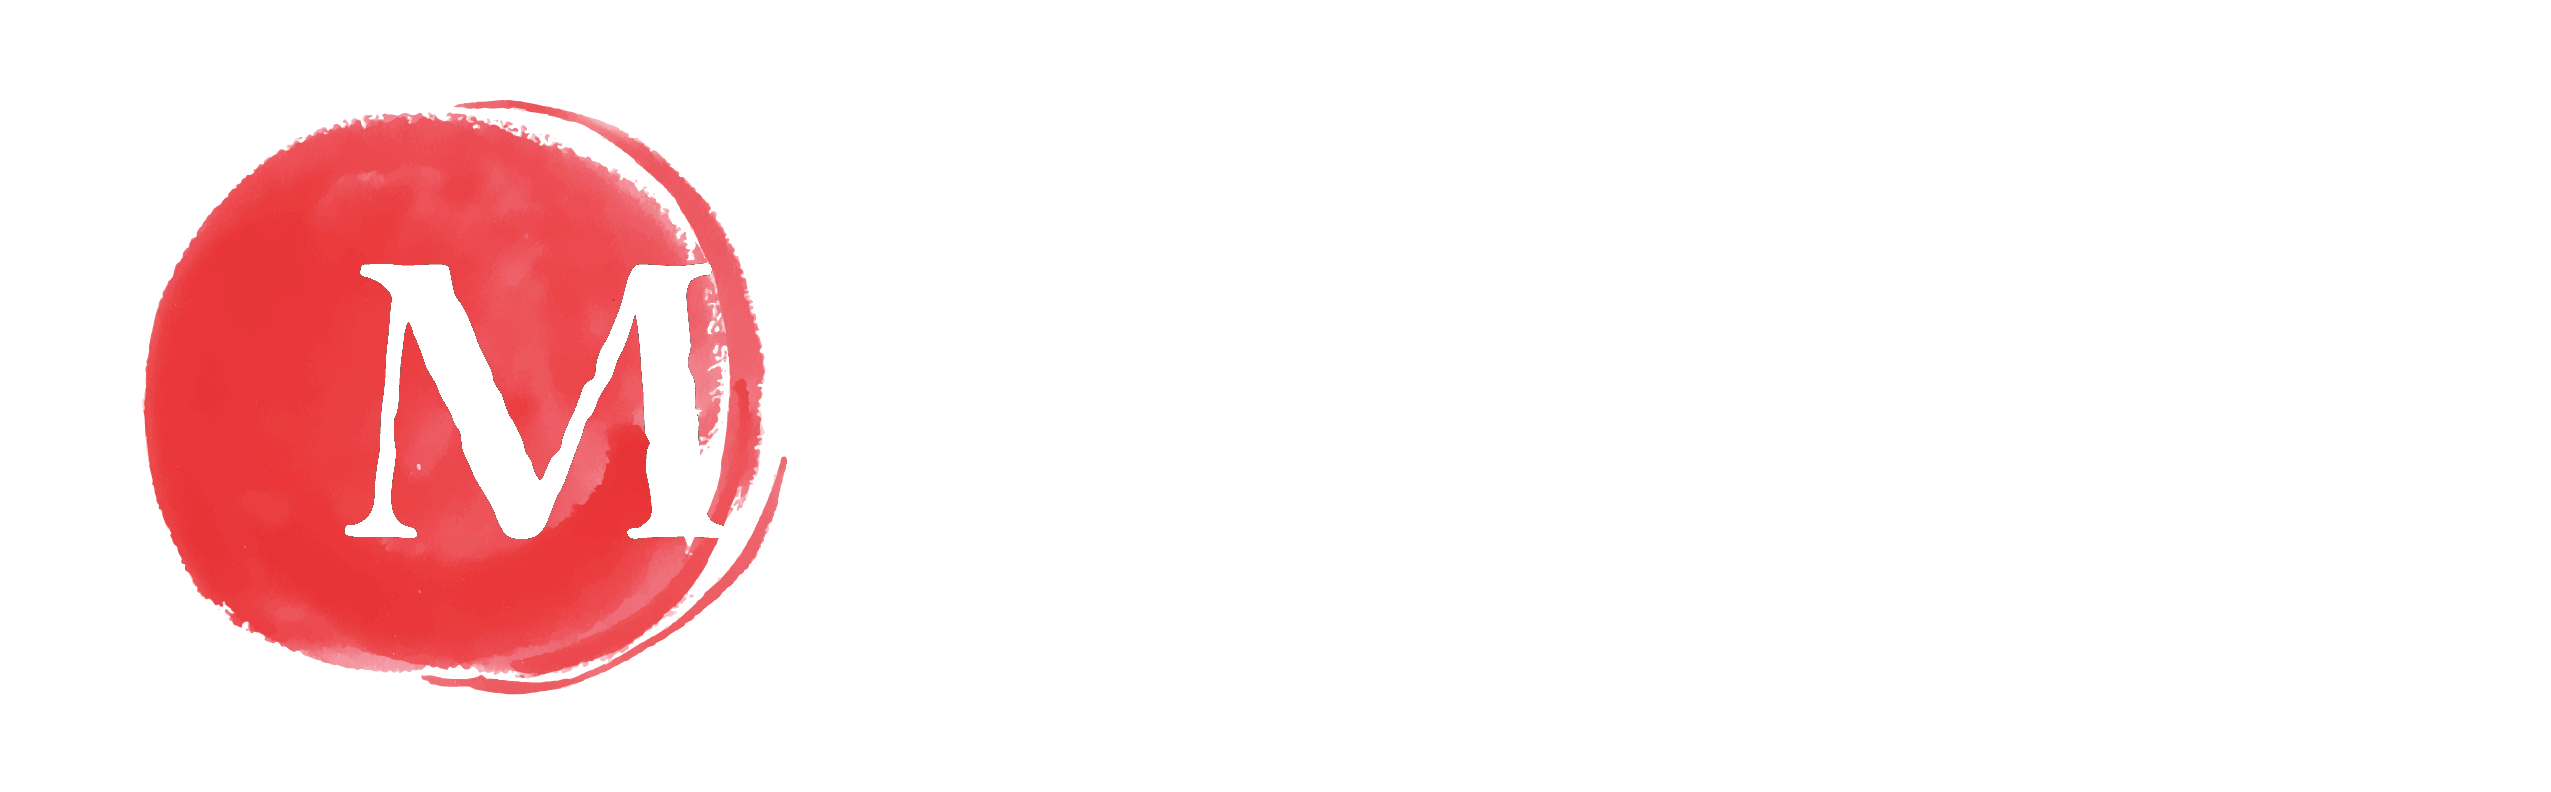 Mikata Restaurant